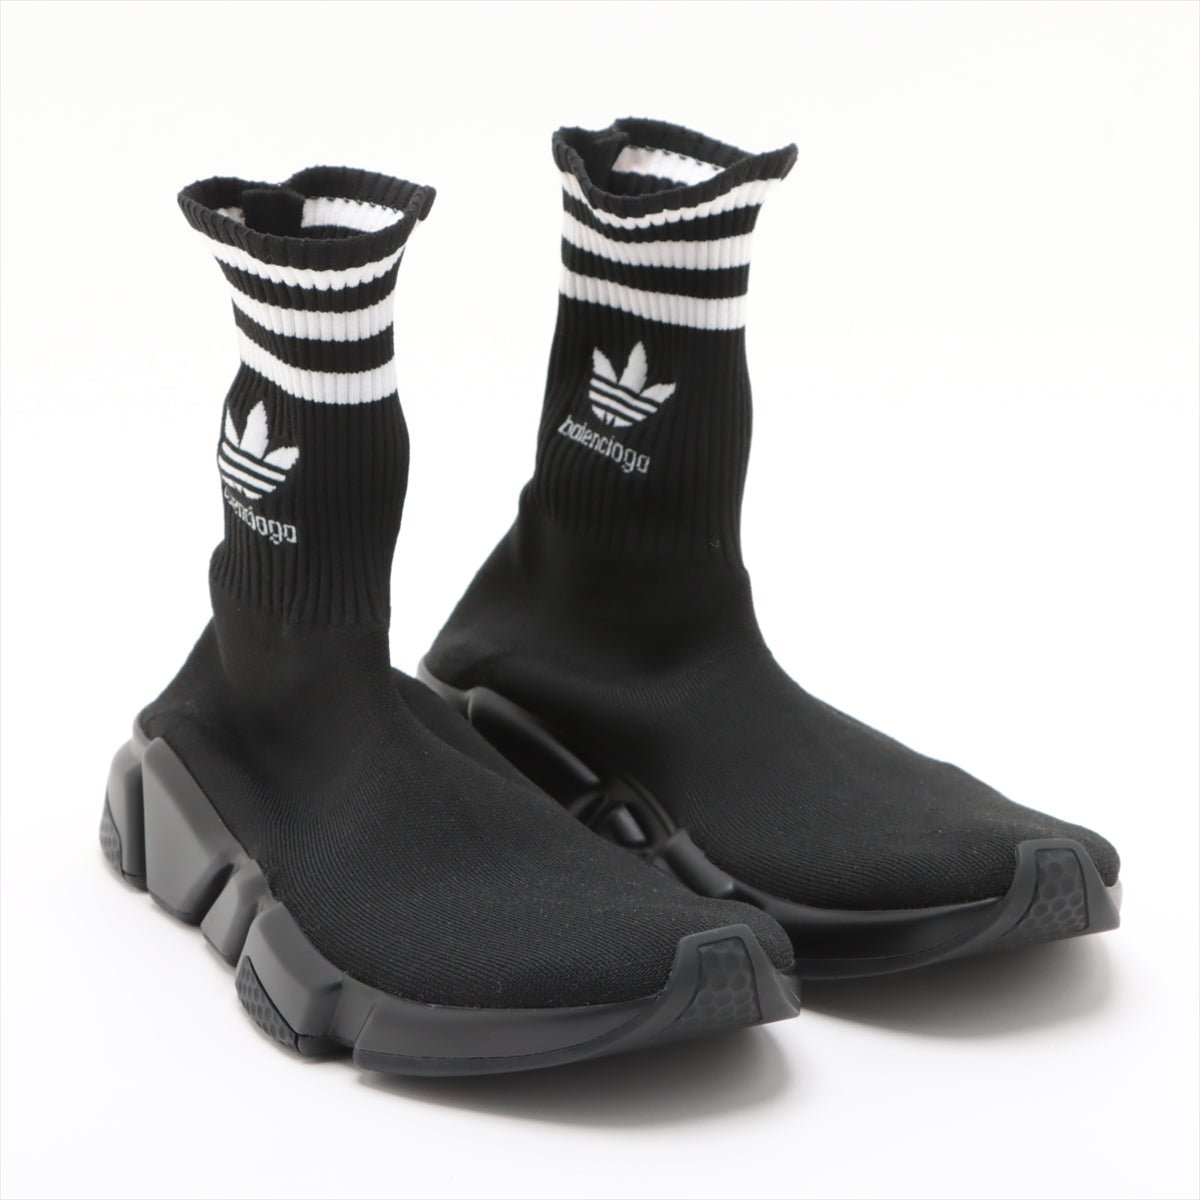 Balenciaga x Adidas 鞋履 27.5cm 黑色 x 白色 717591